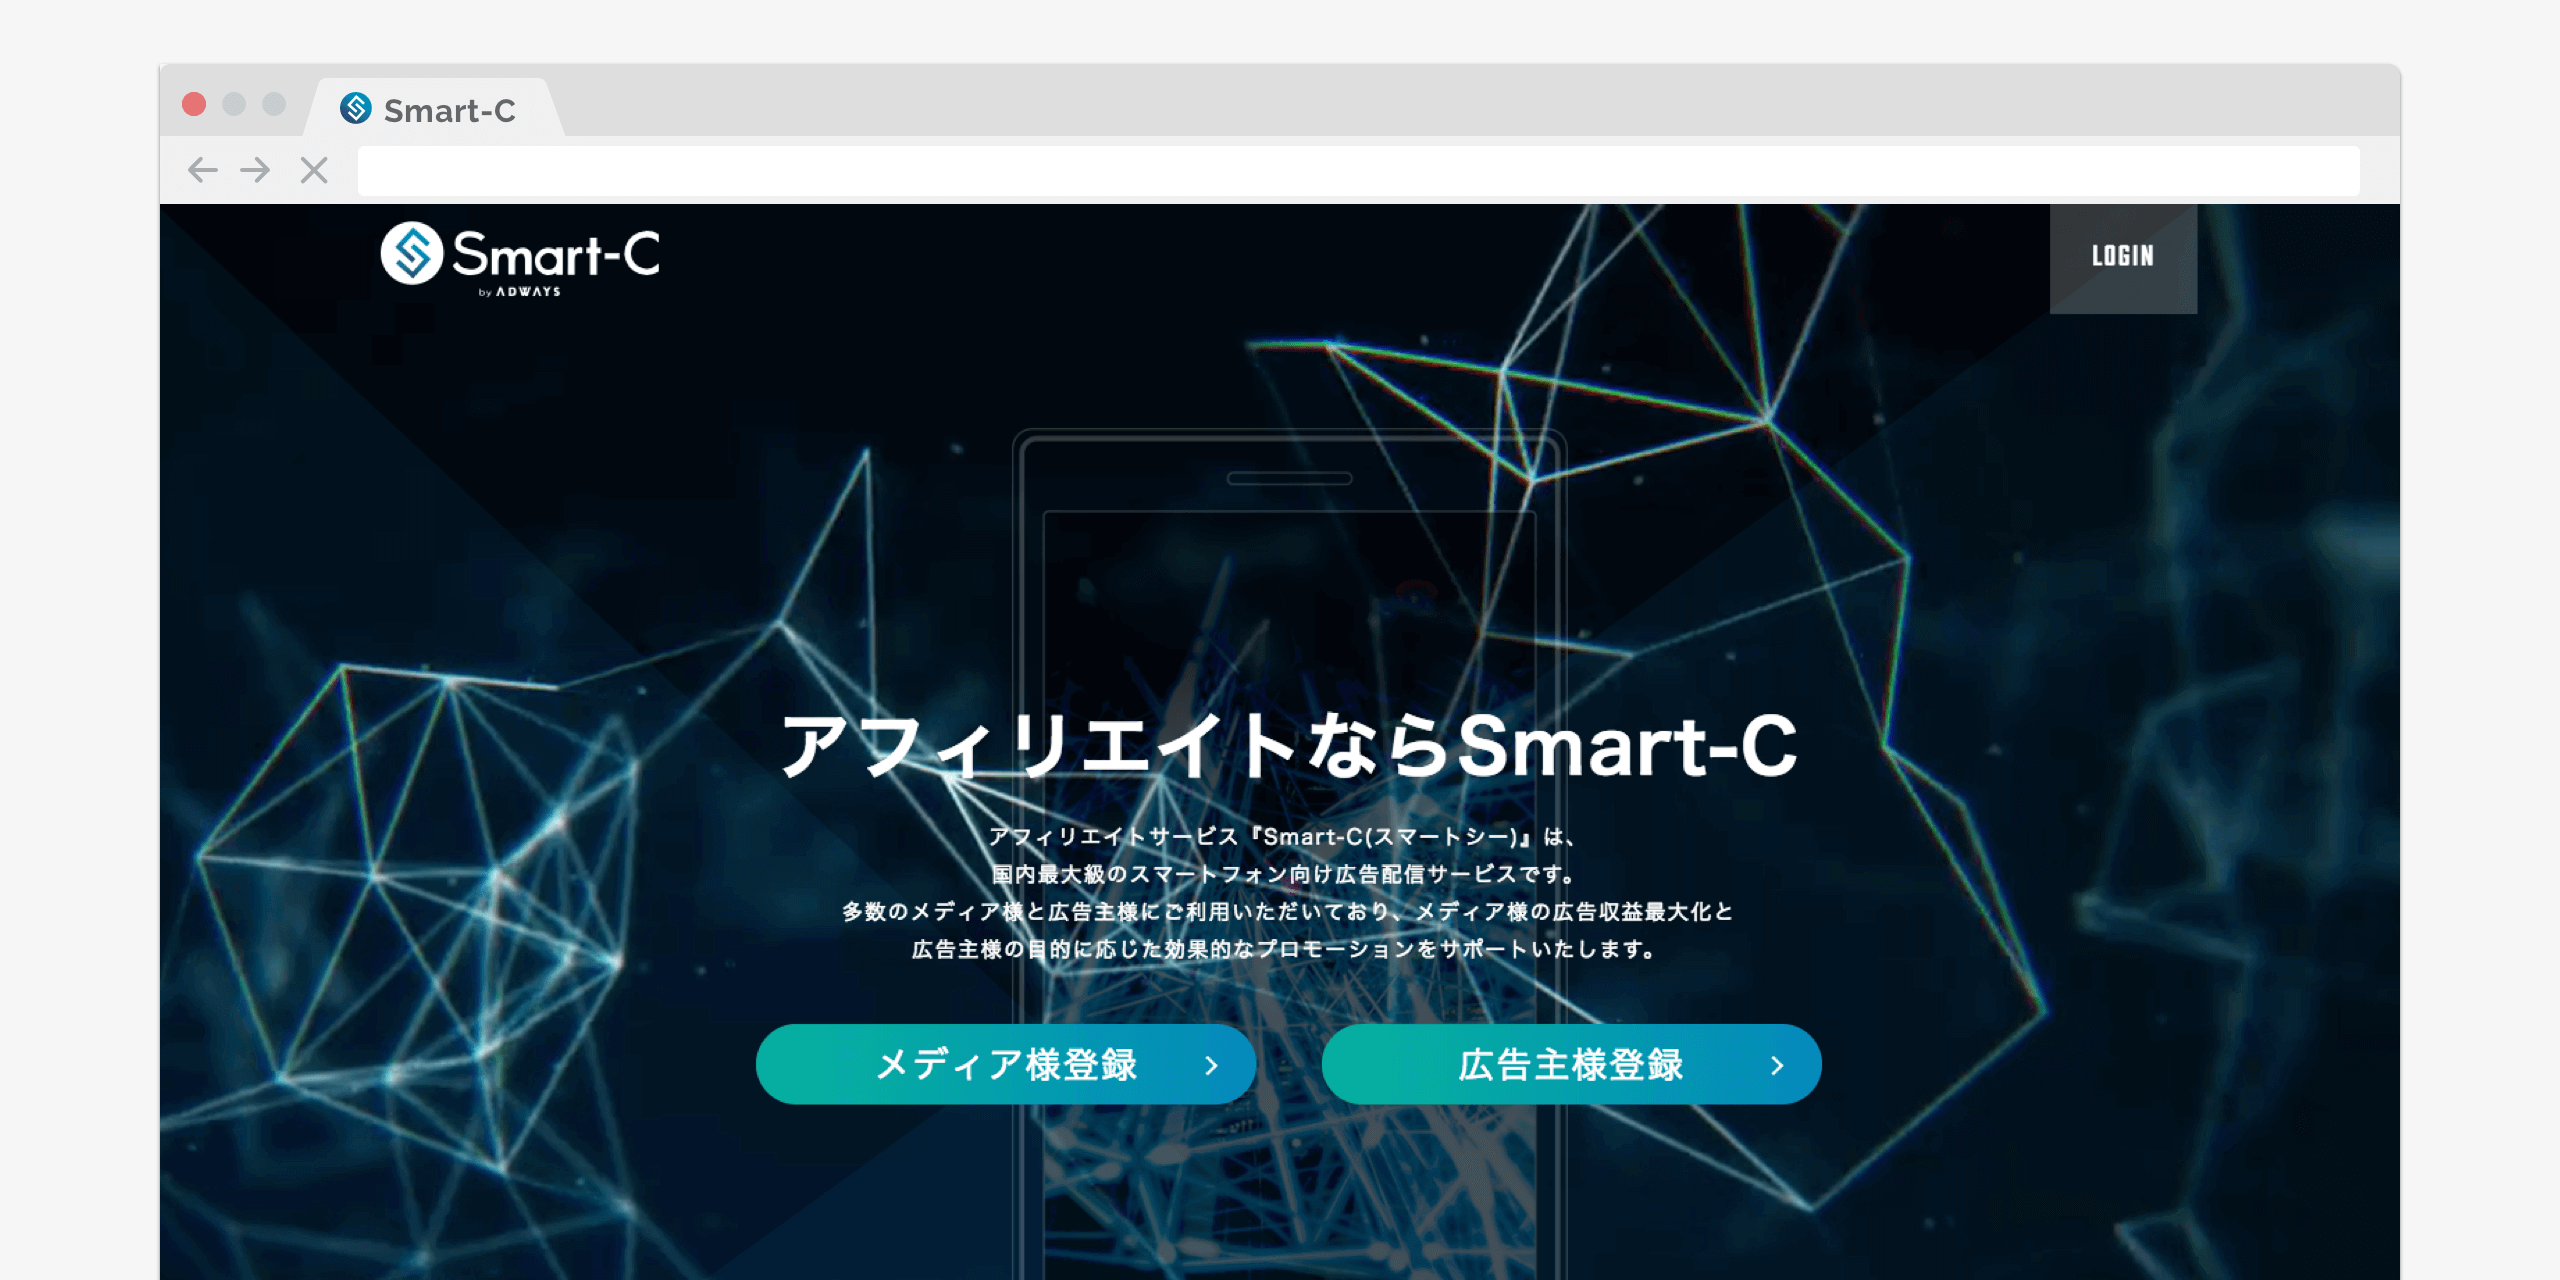 Smart-C